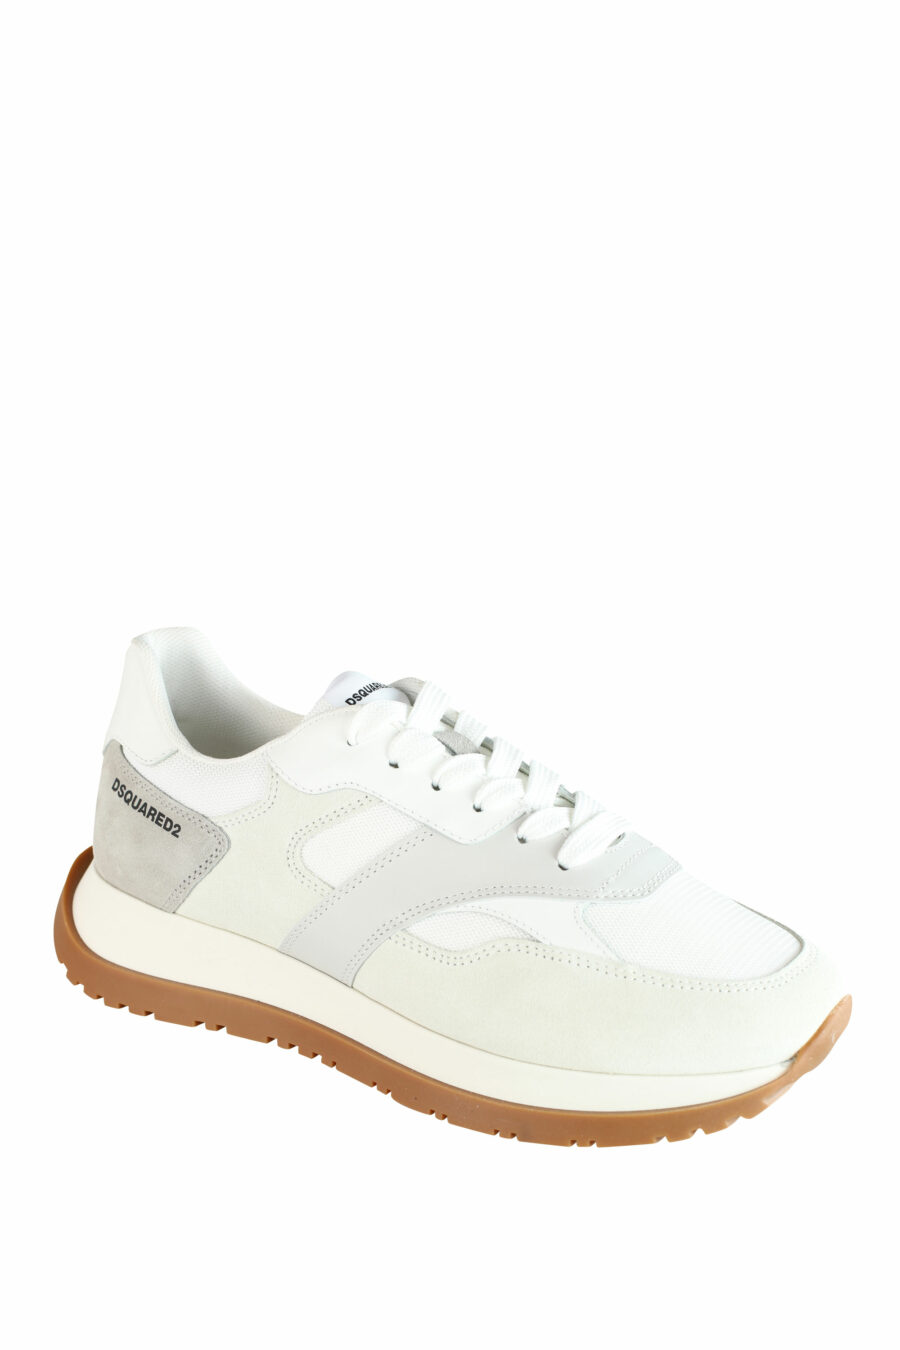 Zapatillas blancas "running" con detalles grises y beige - IMG 1398